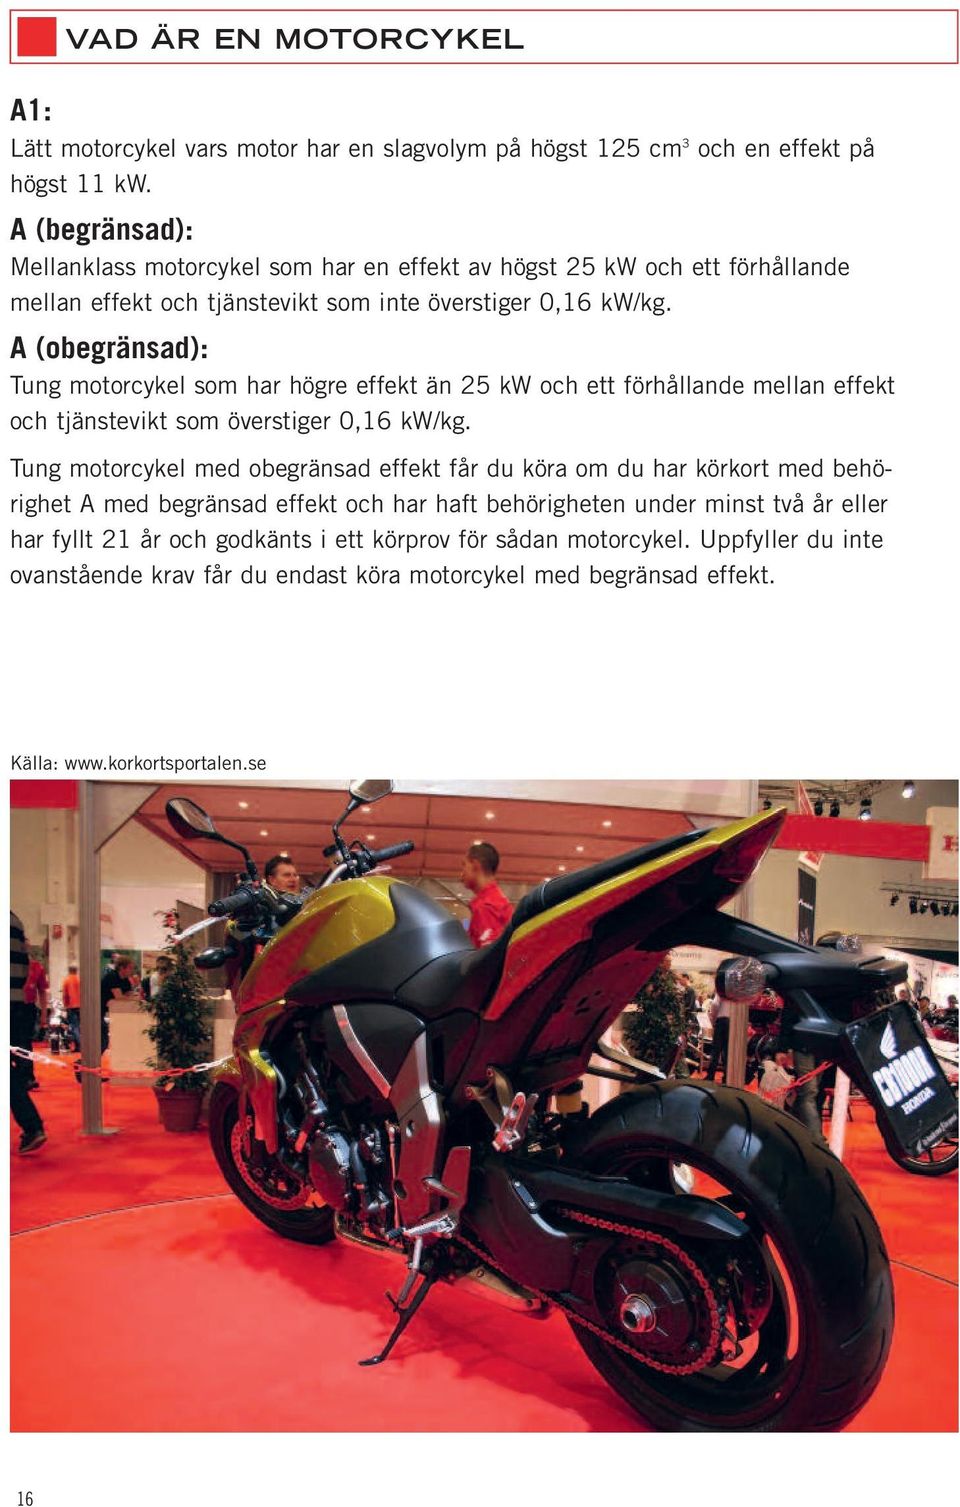 A (obegränsad): Tung motorcykel som har högre effekt än 25 kw och ett förhållande mellan effekt och tjänstevikt som överstiger 0,16 kw/kg.